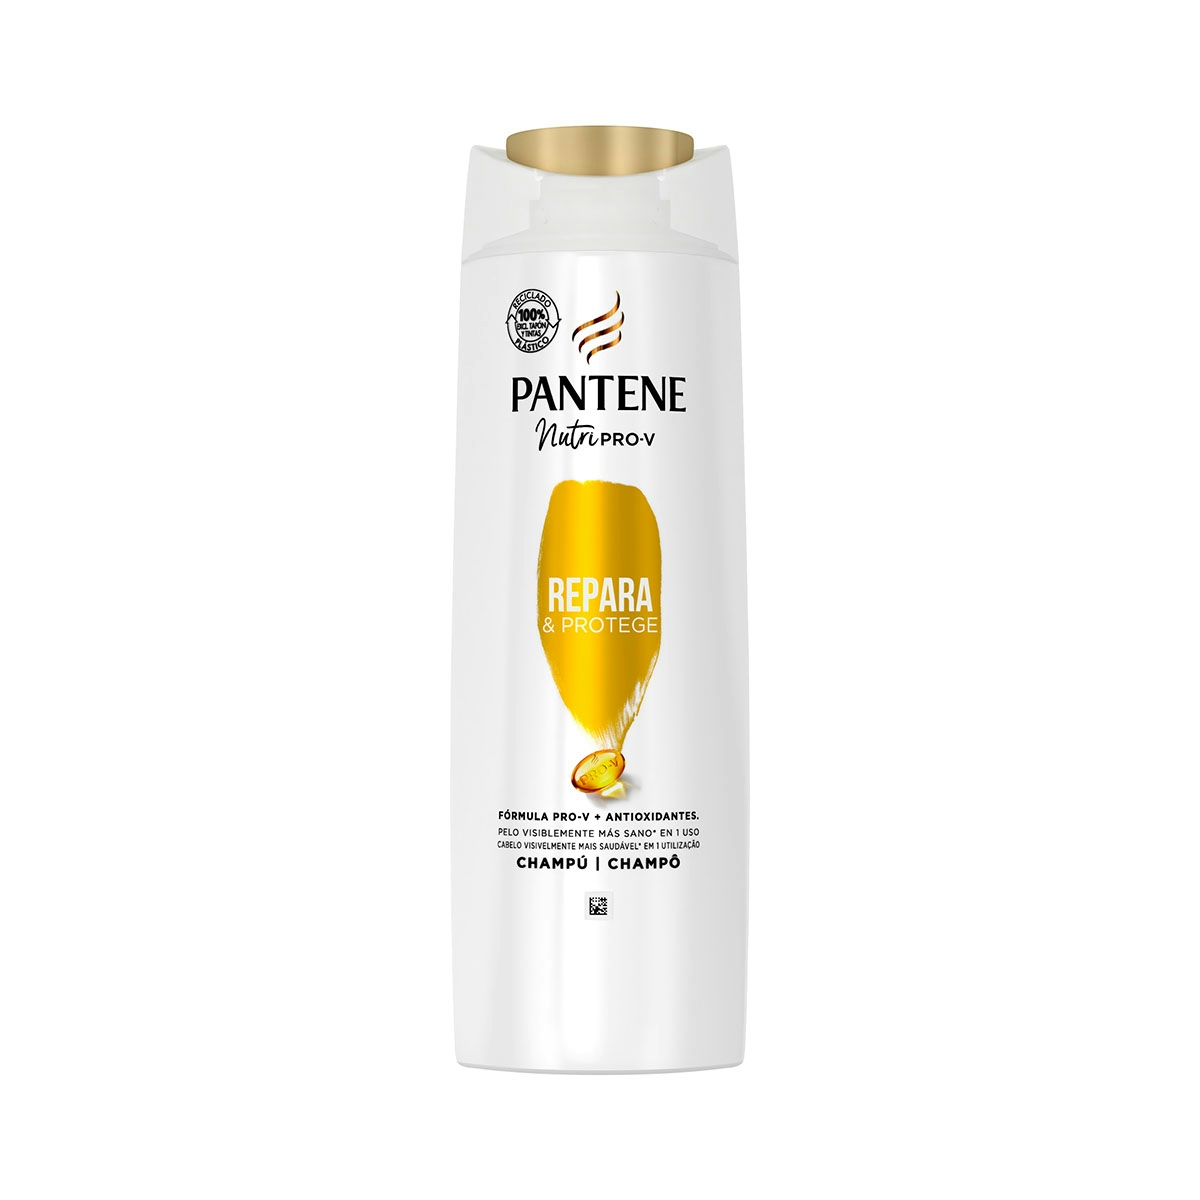 Pantene Champú Repara & Protege Nutri Pro-V, fórmula Pro-V + antioxidantes, para cabello débil y dañado, 340ML